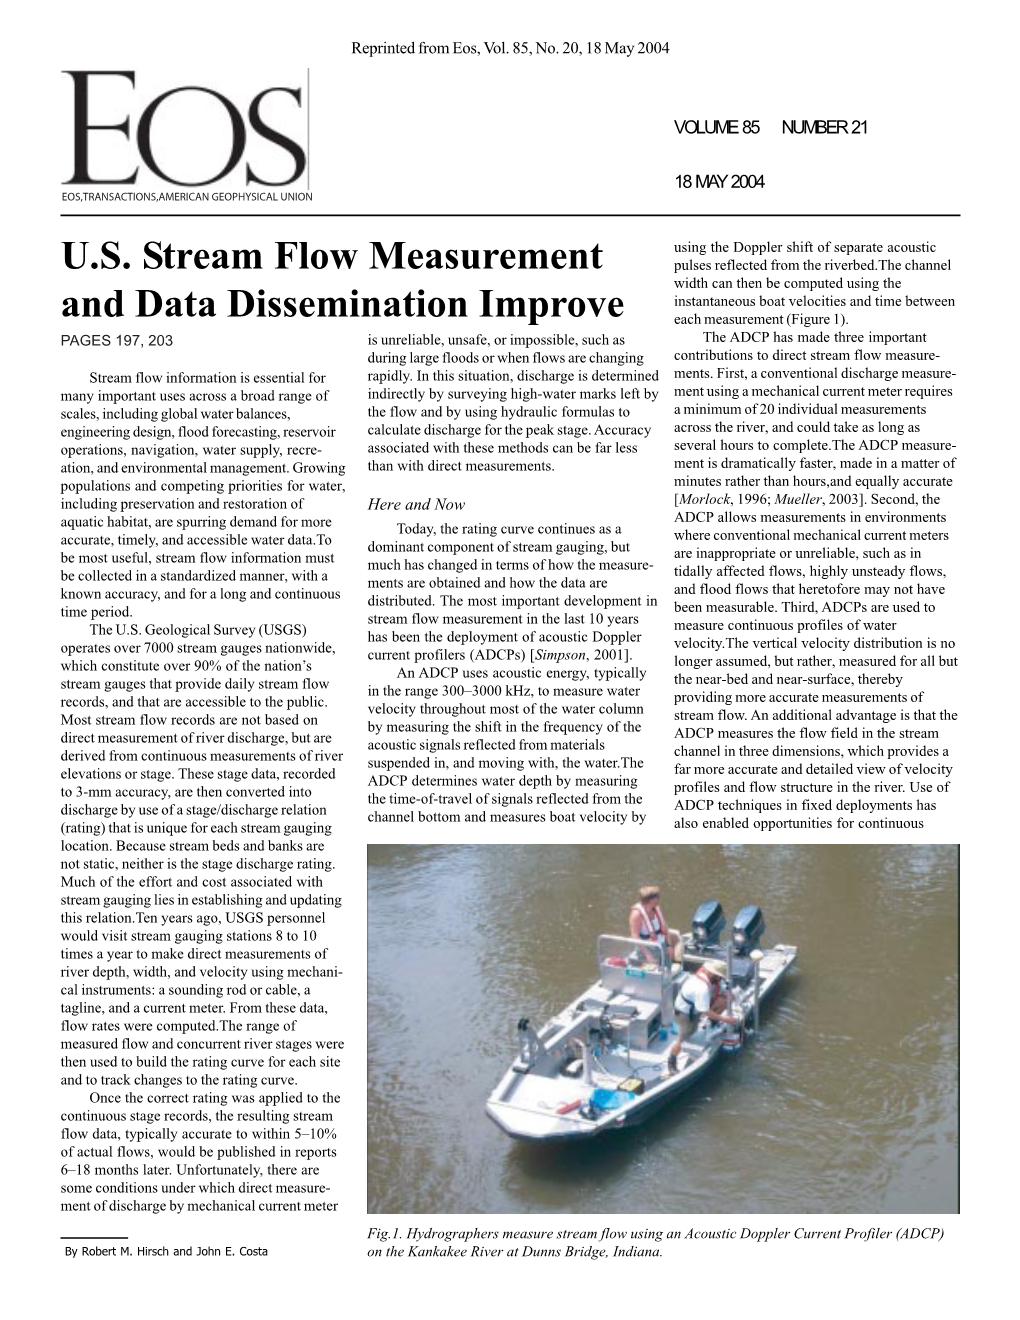 U.S. Stream Flow Measurement and Data Dissemination Improve